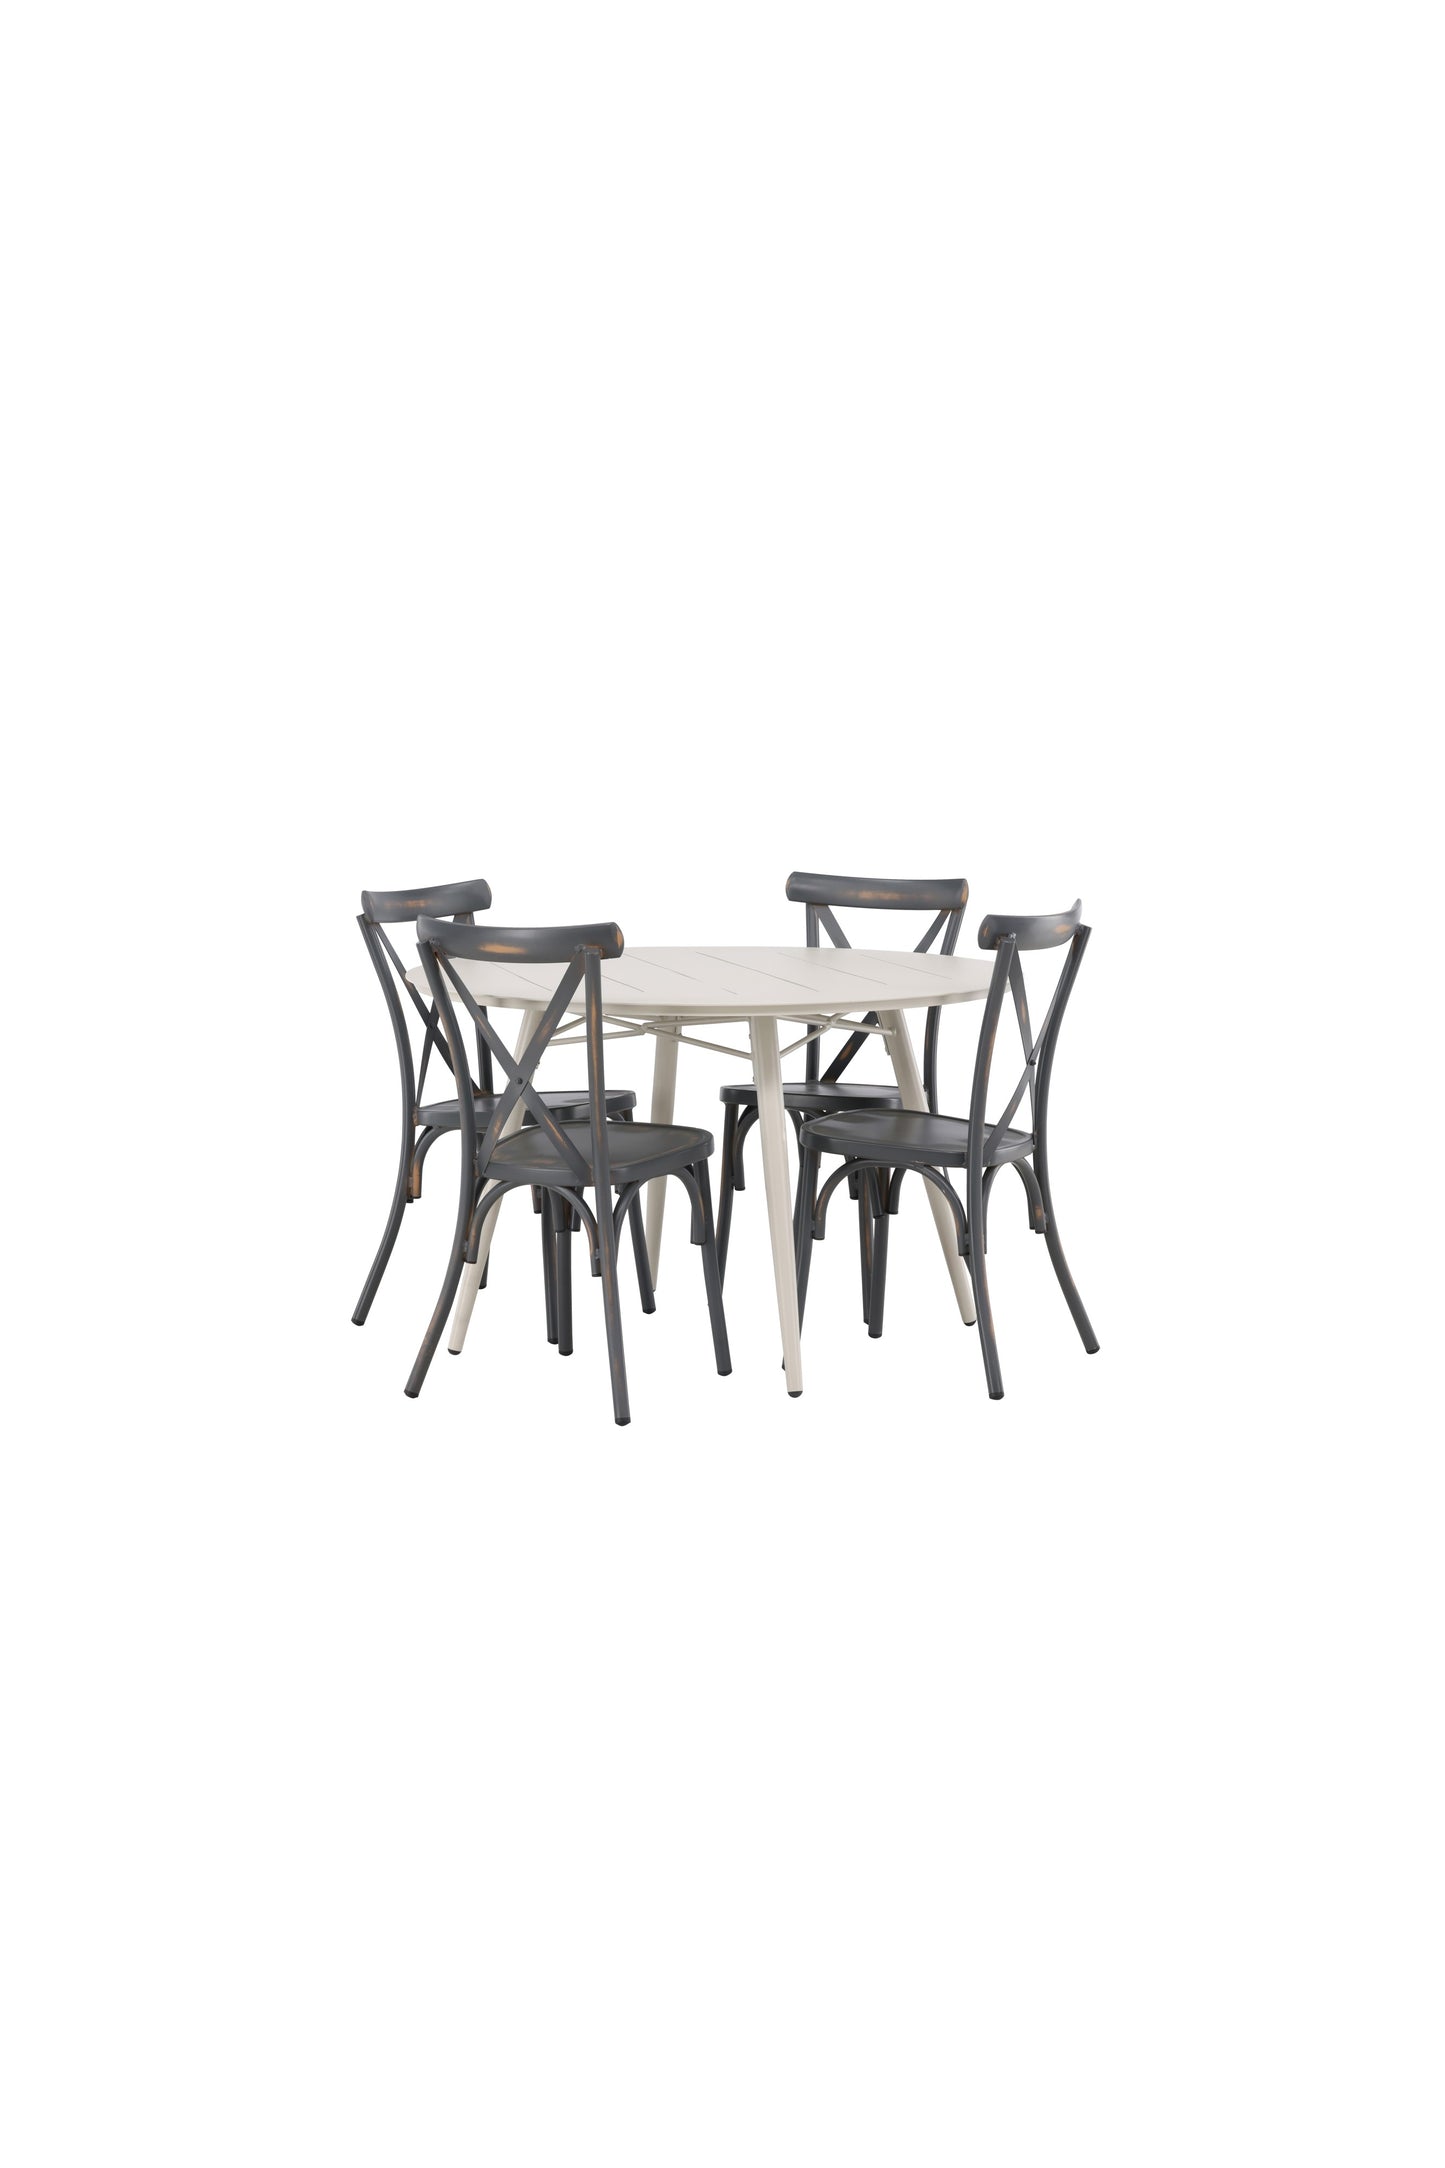 Lia - Spisebord, Beige - Rundt 120 cm + Tablas stol Aluminium - Sort